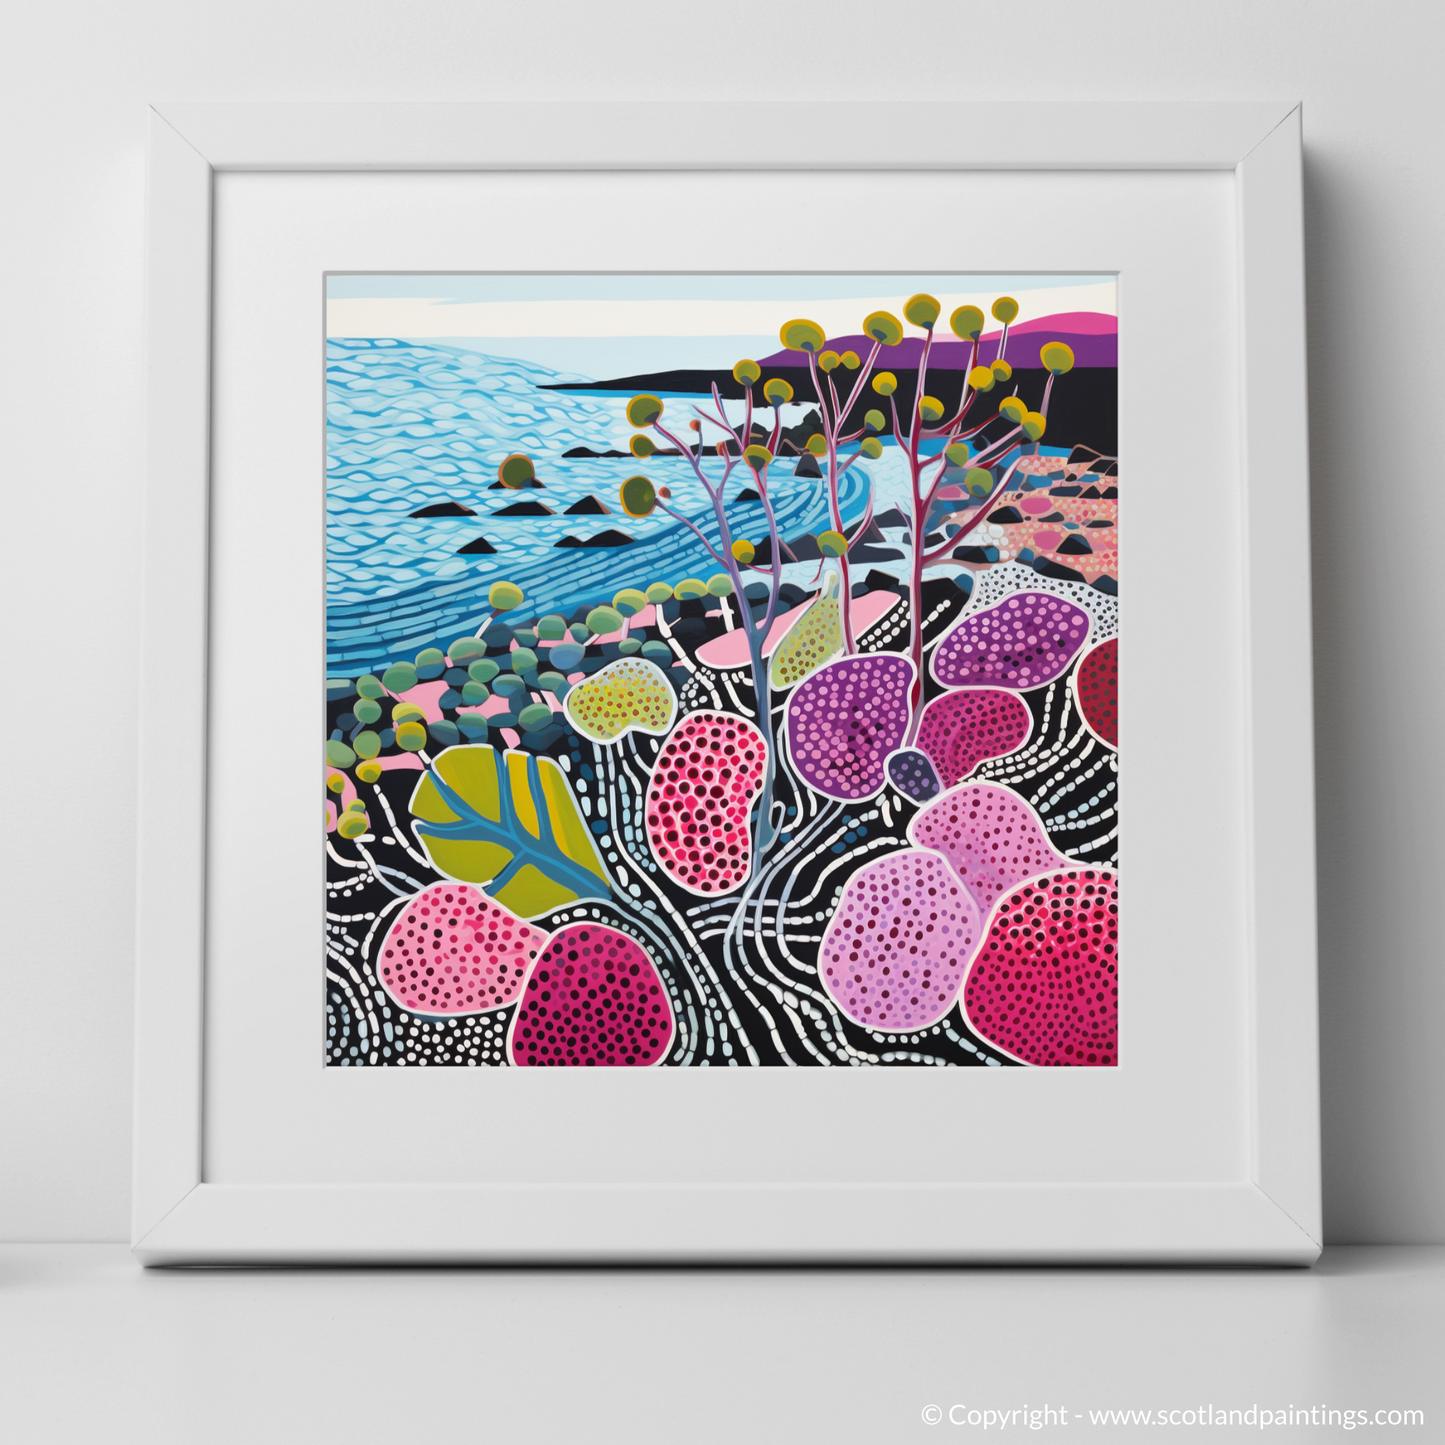 Coastal Flora Pop Art: Oysterplant Wonders of Dornoch Firth